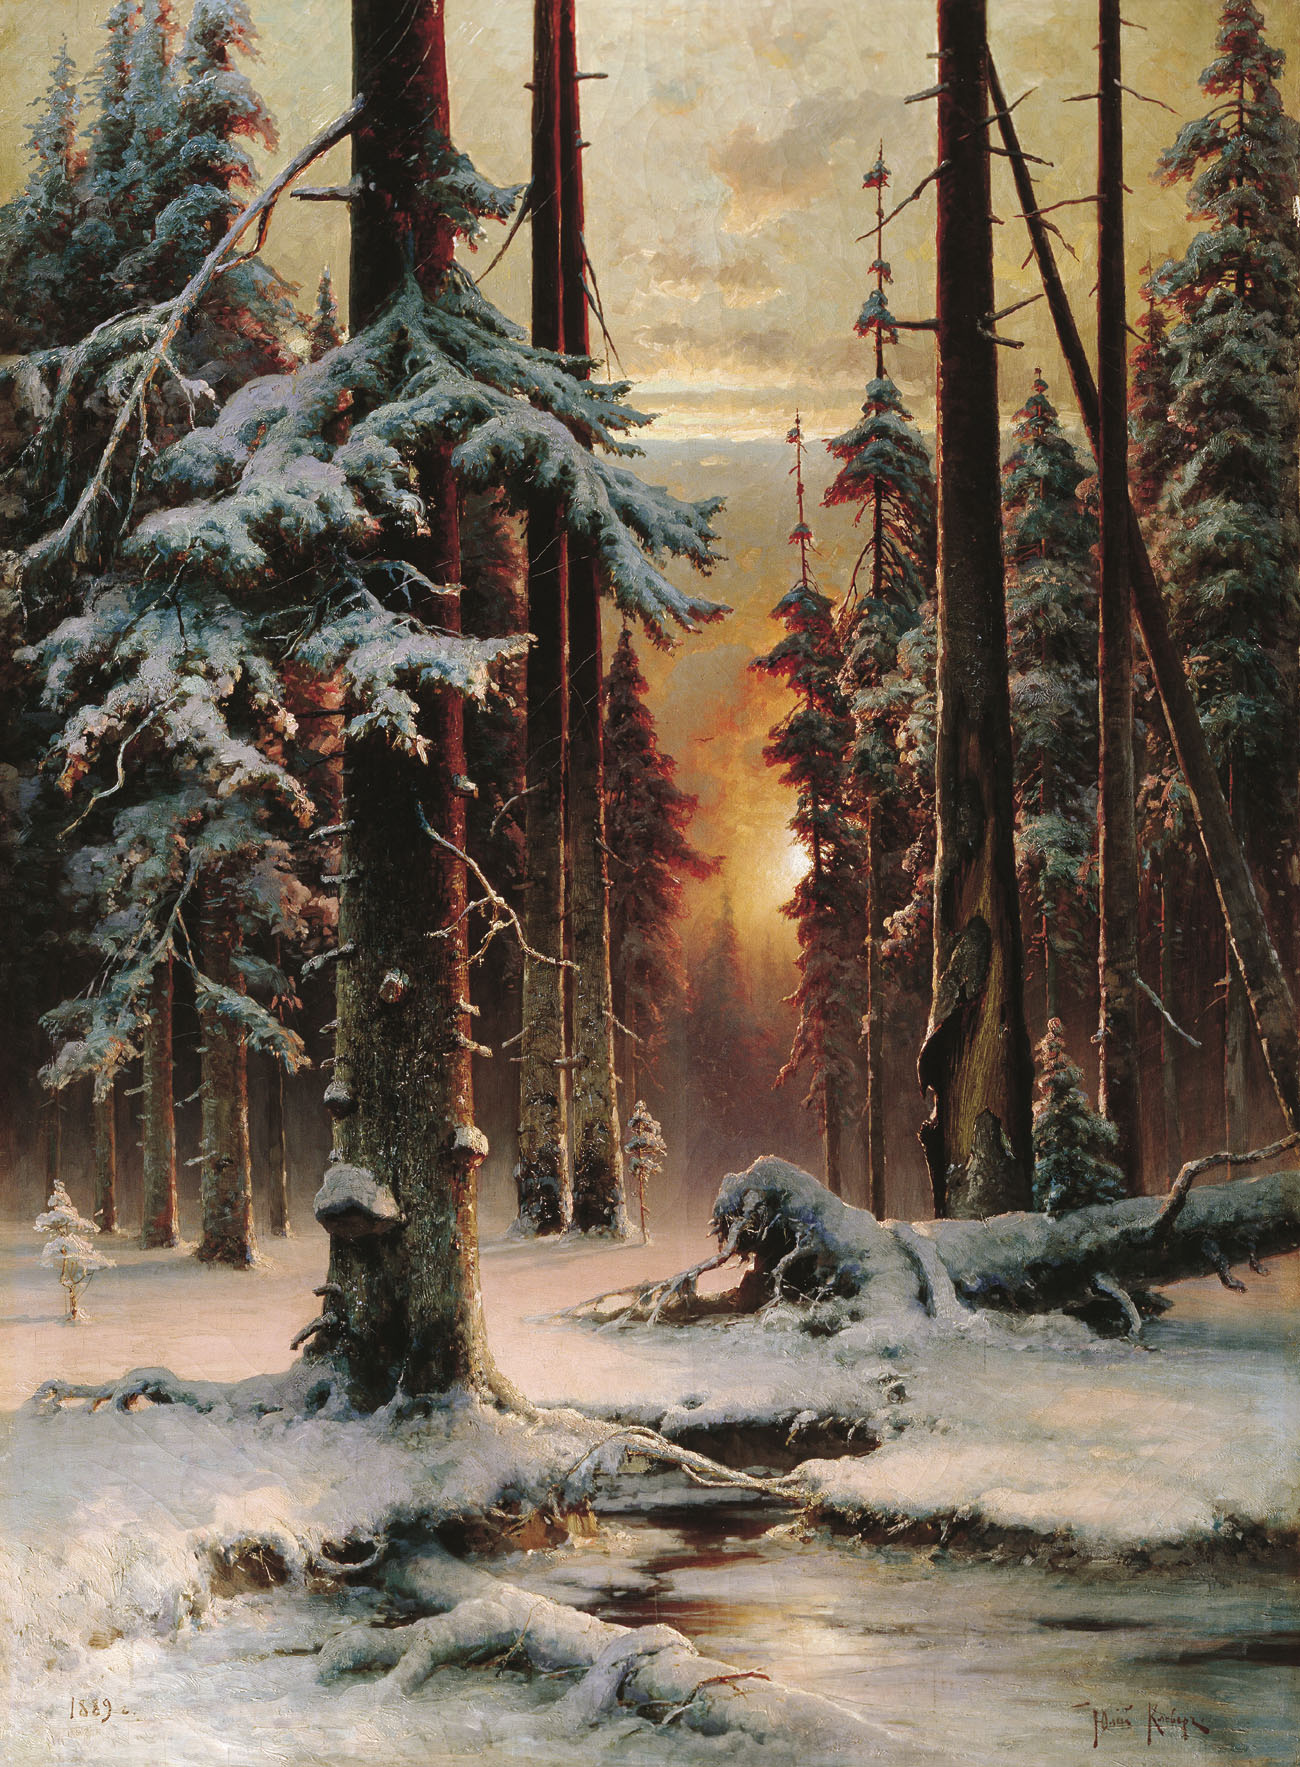 Юлий Клевер. "Зимний закат в еловом лесу". 1889.